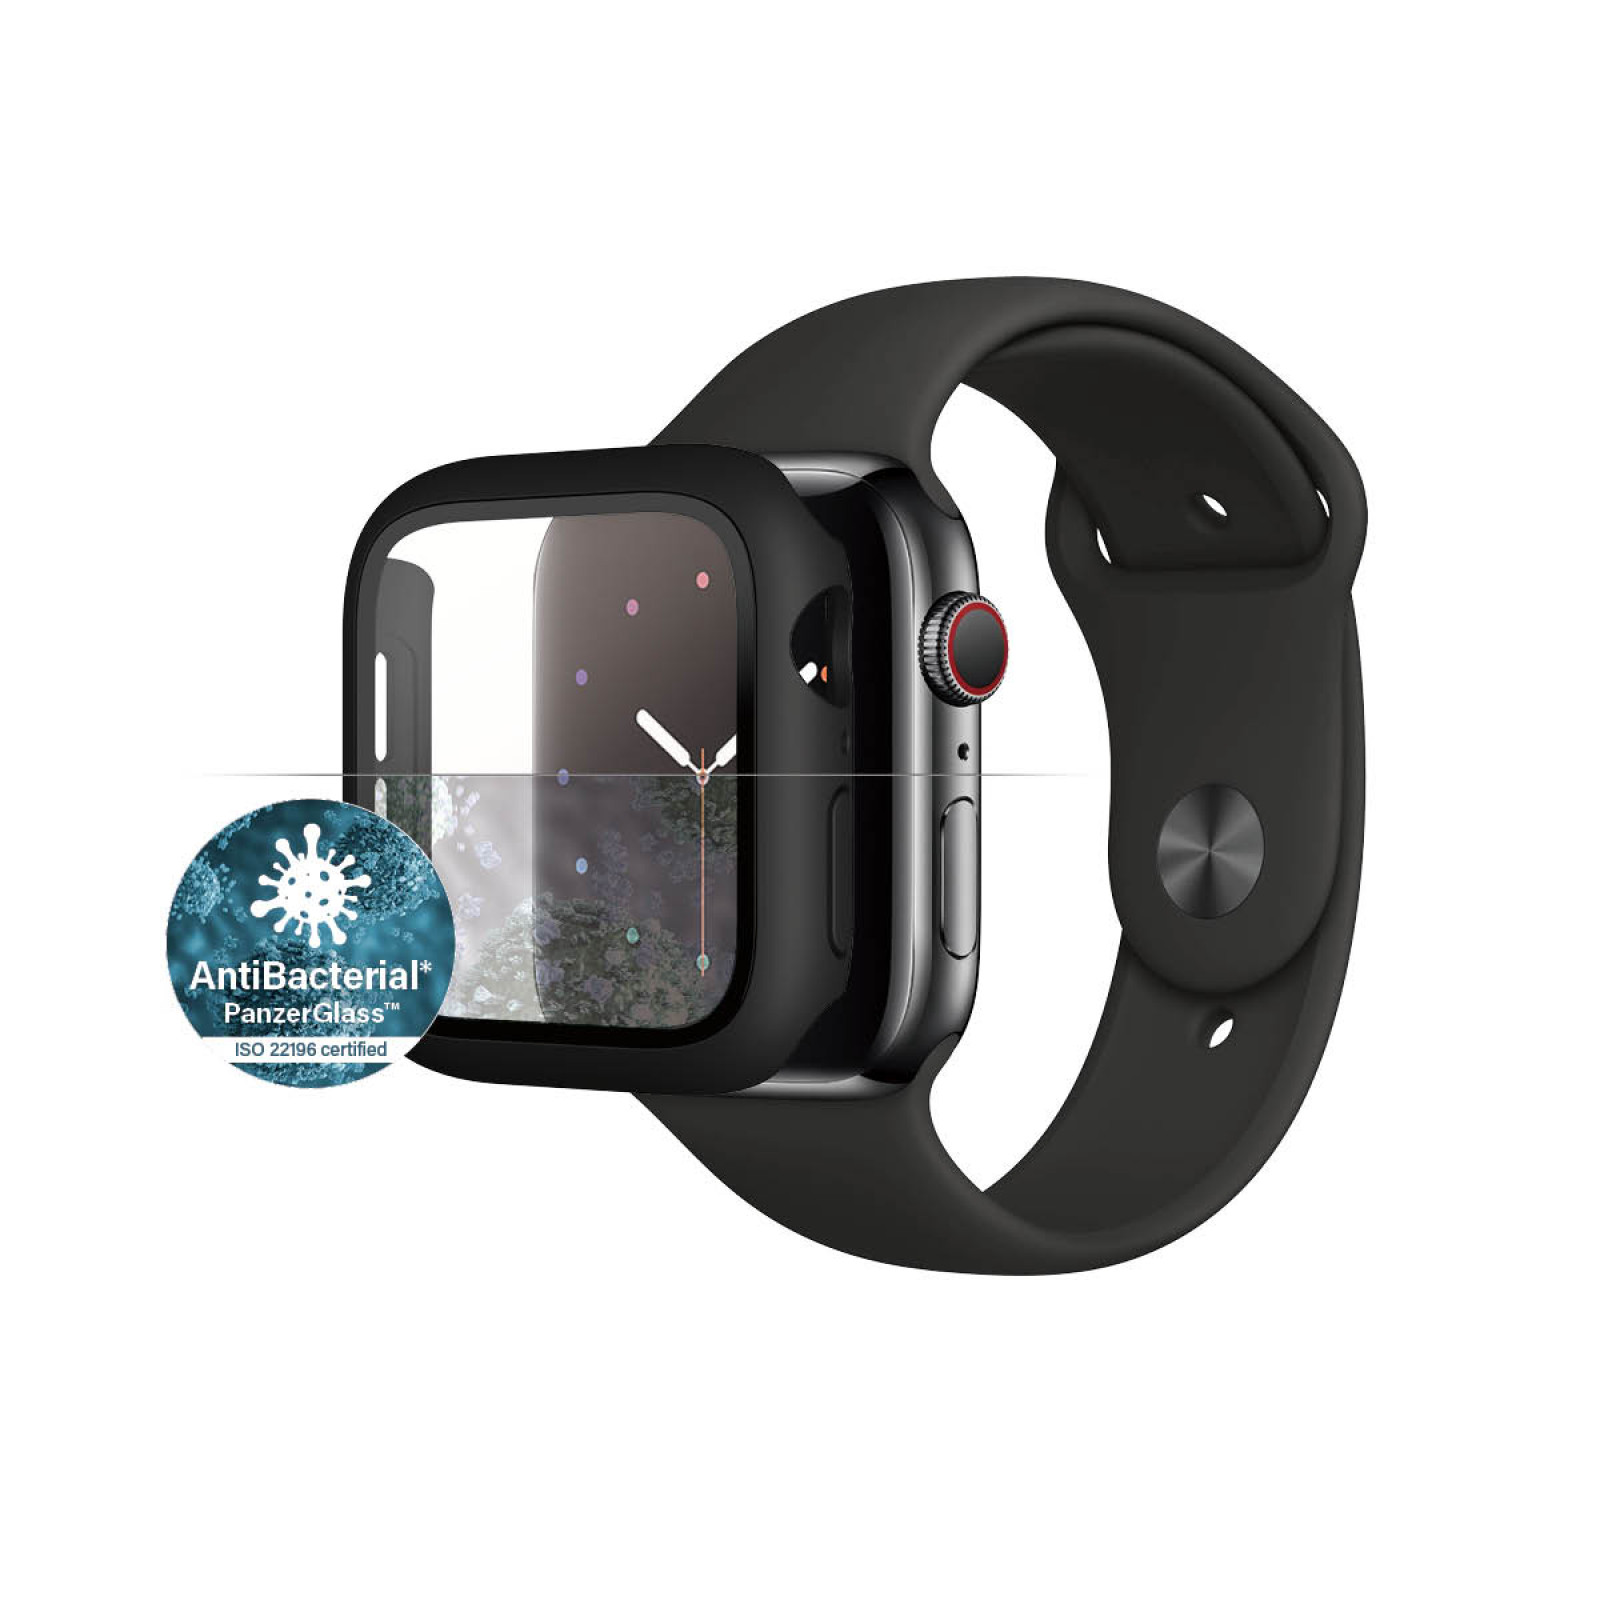 Стъклен протектор със силиконова рамка Apple watch Series 4/5/6/SE 44mm Panzerglass, AntiBacteria - Черна рамка